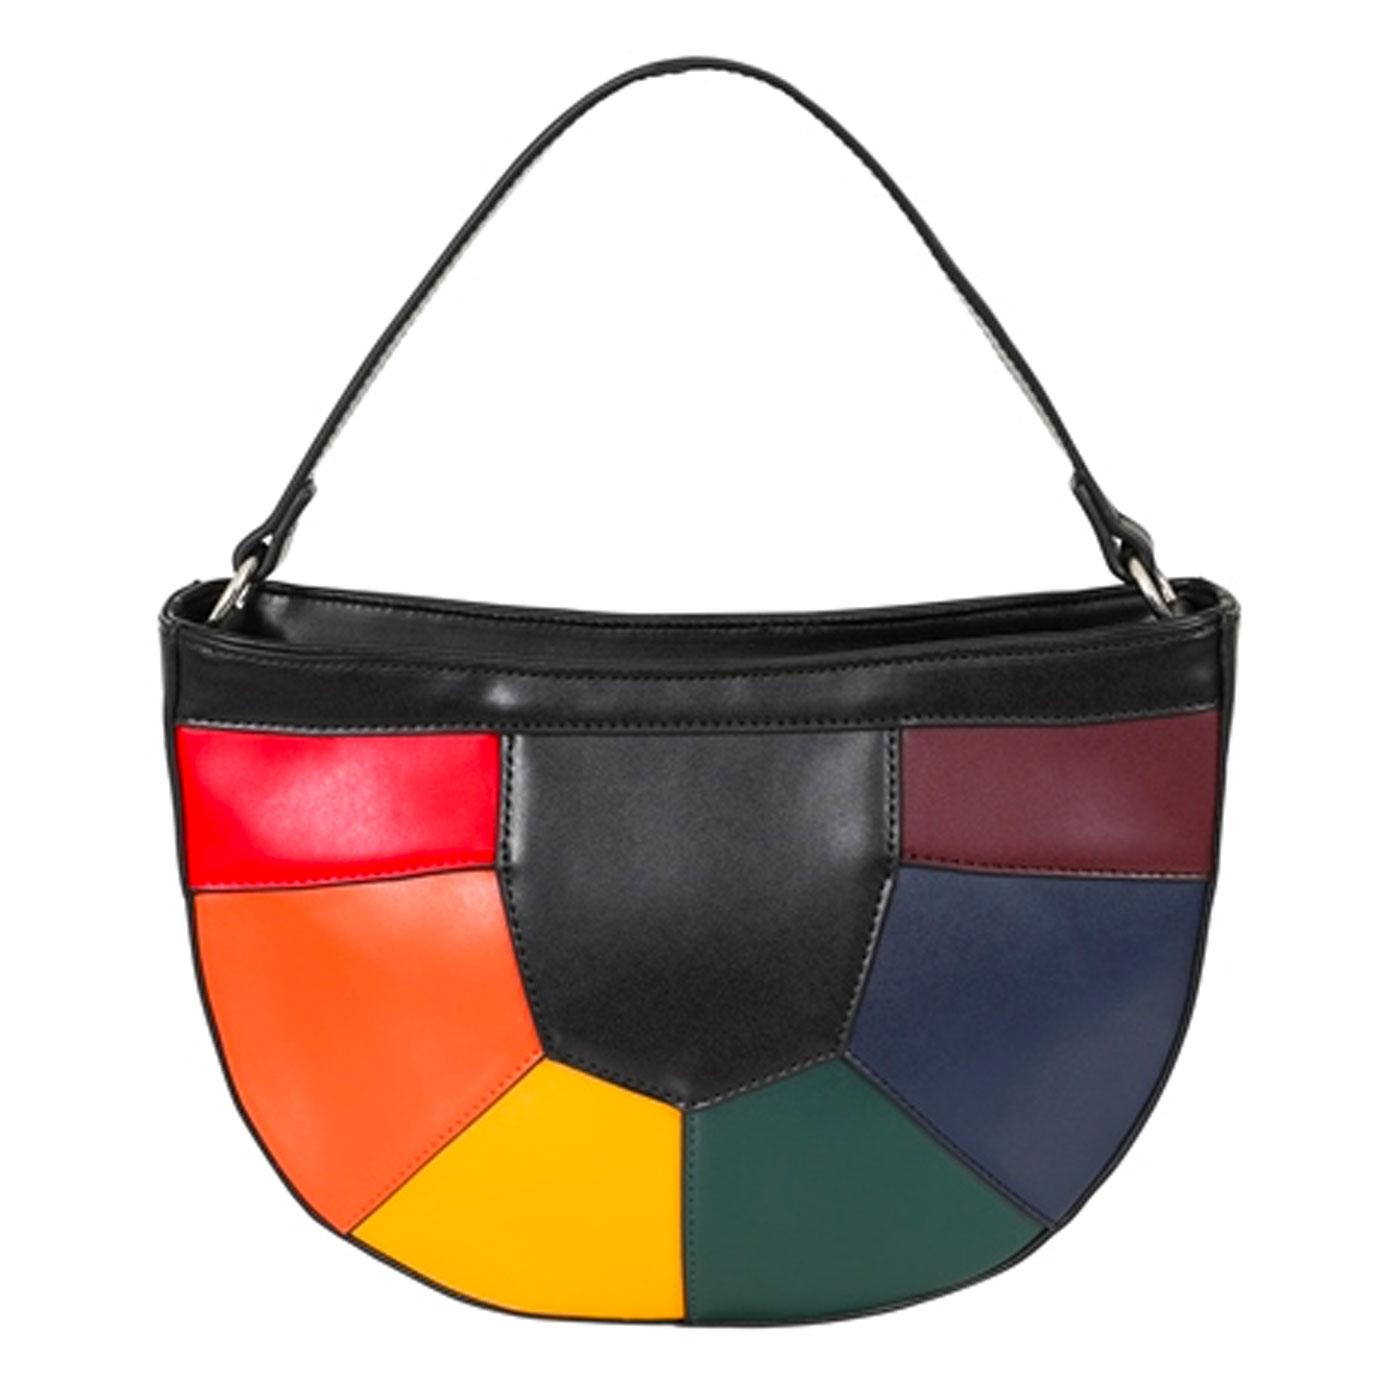 Suzie COLLECTIF Retro Vintage Style Rainbow Bag